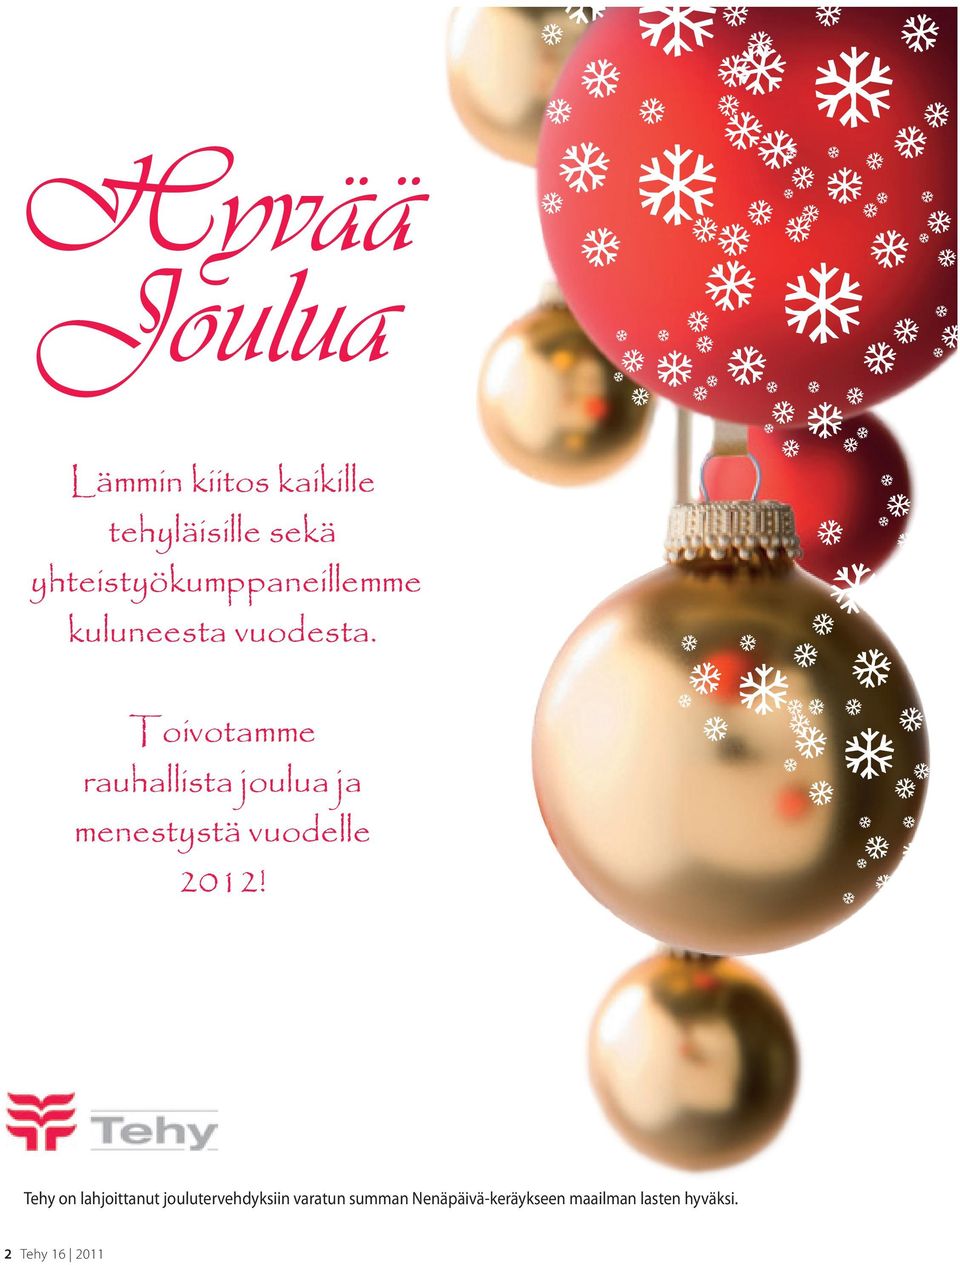 Toivotamme rauhallista joulua ja menestystä vuodelle 2012!